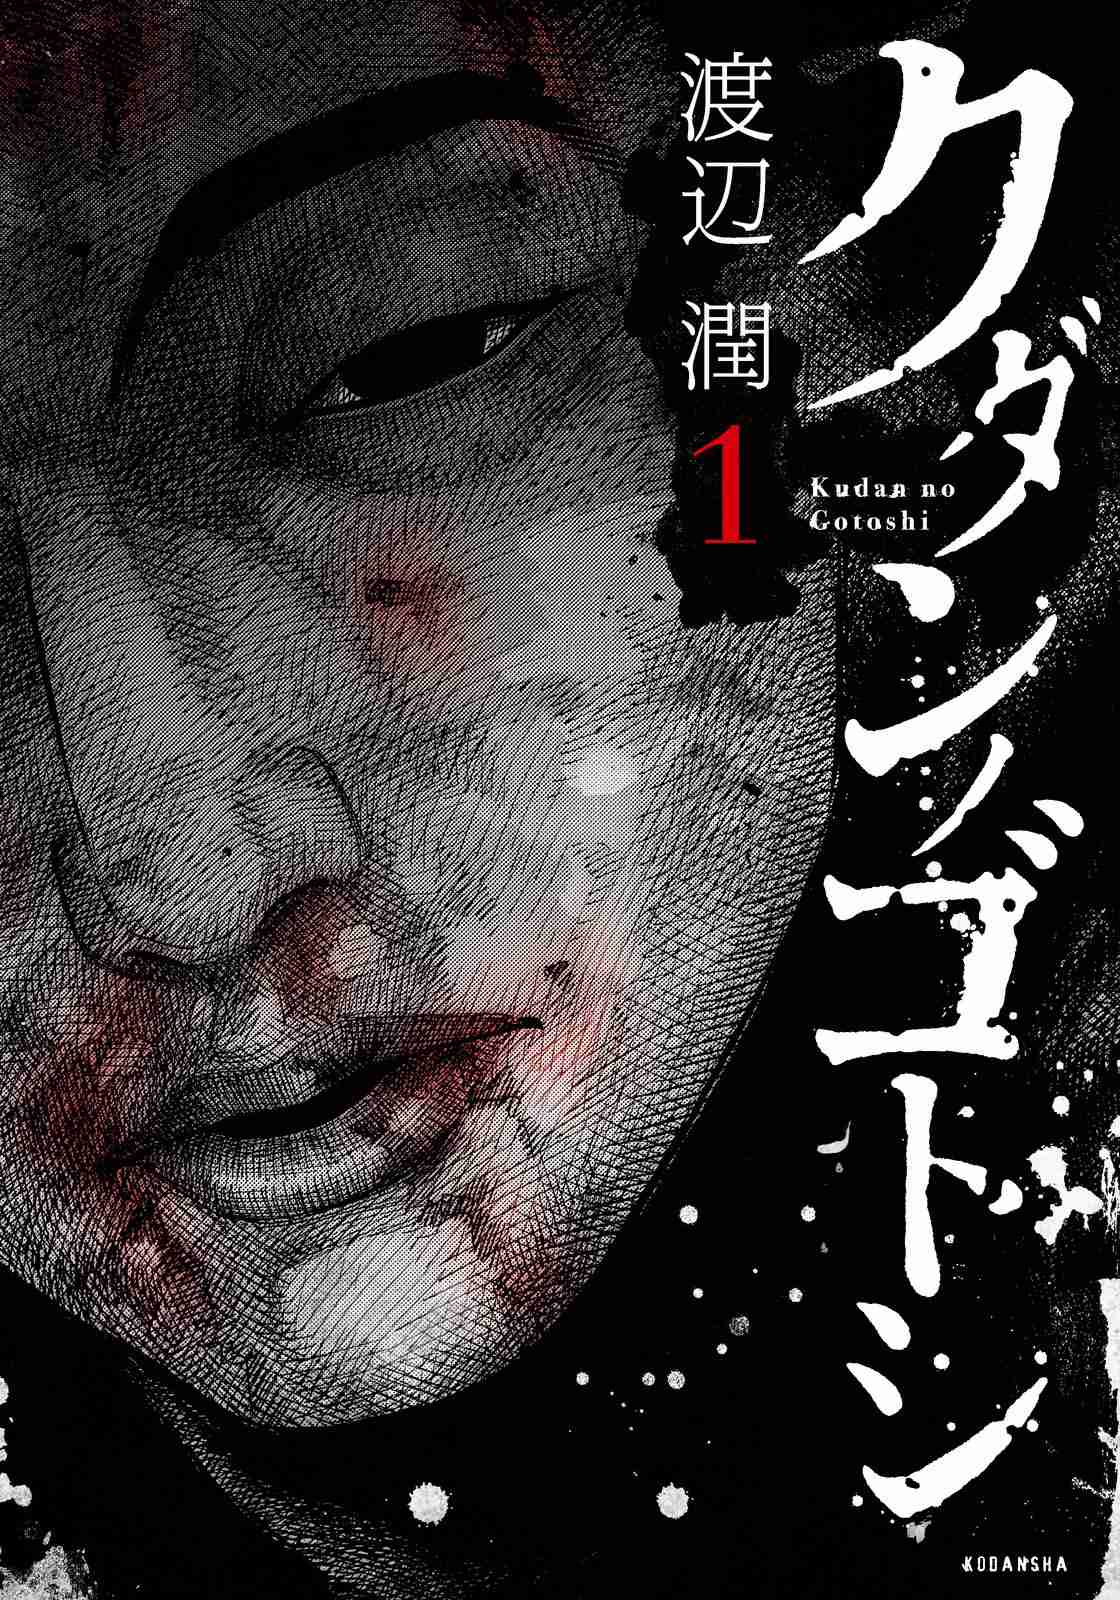 Kudan no Gotoshi Vol. 1 Ch. 3 Shiraishi Tatsumi < Part 2 >